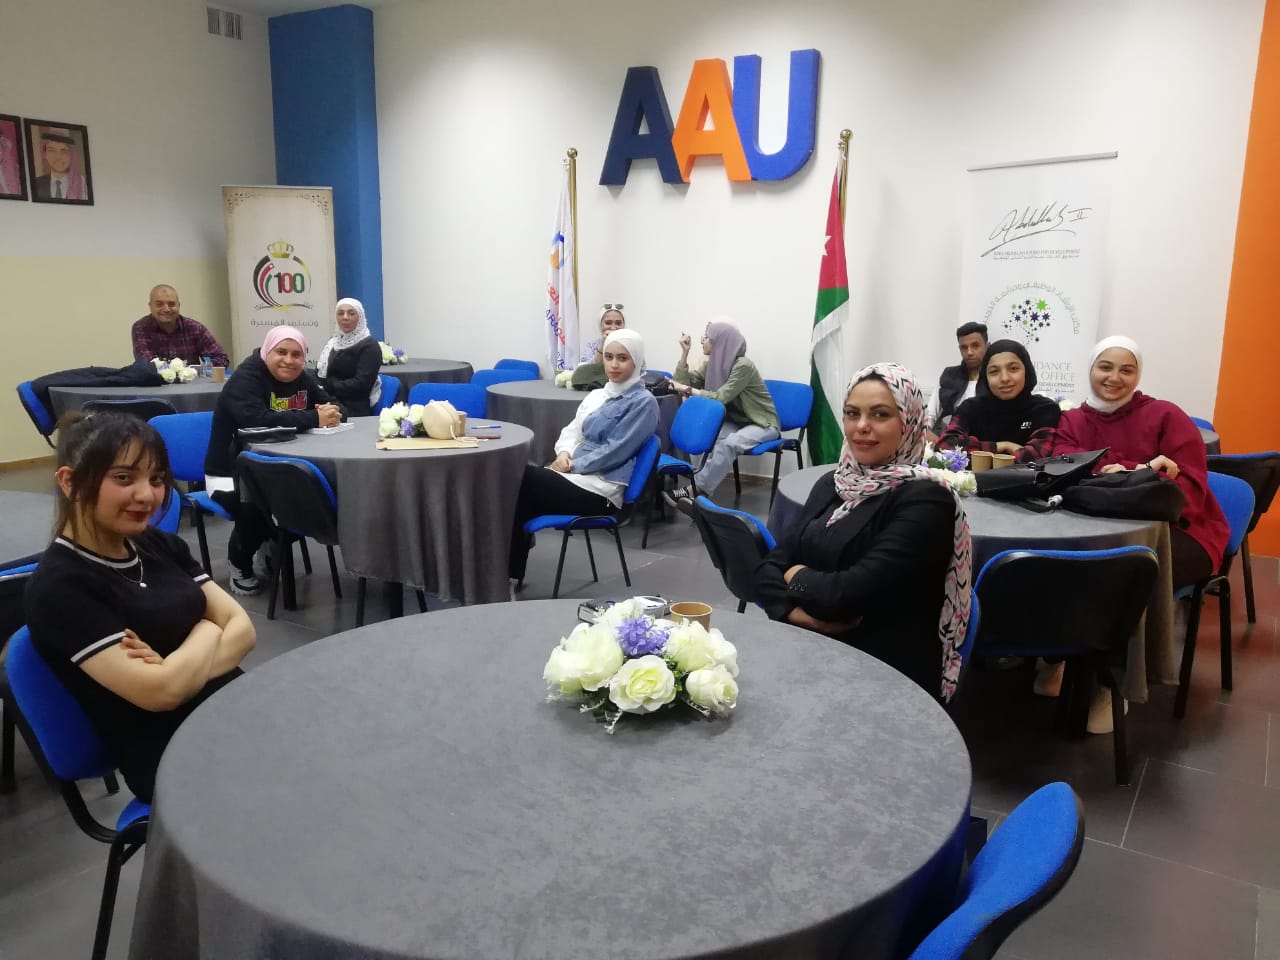 ورشة "دور المدقق وأخلاقيات المهنة" لطلبة عمان العربية1